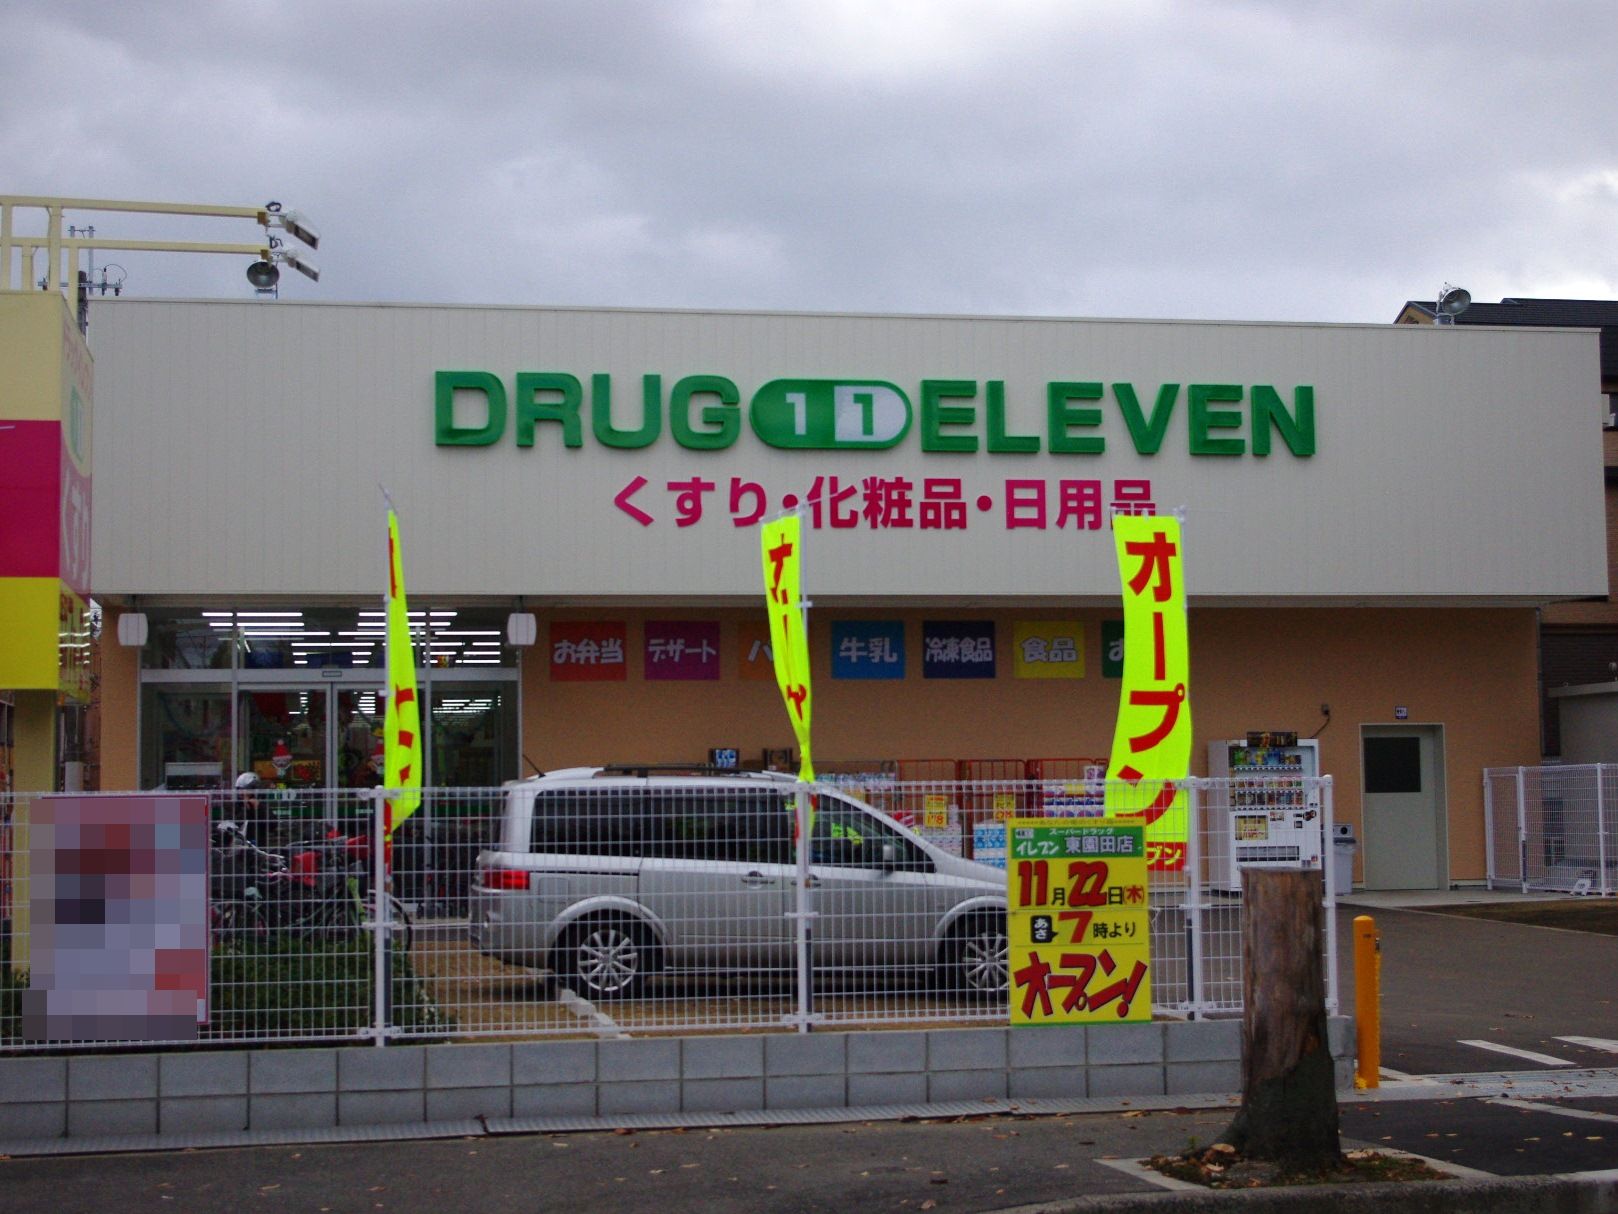 Dorakkusutoa. Super Drug Eleven Higashisonoda shop 764m until (drugstore)